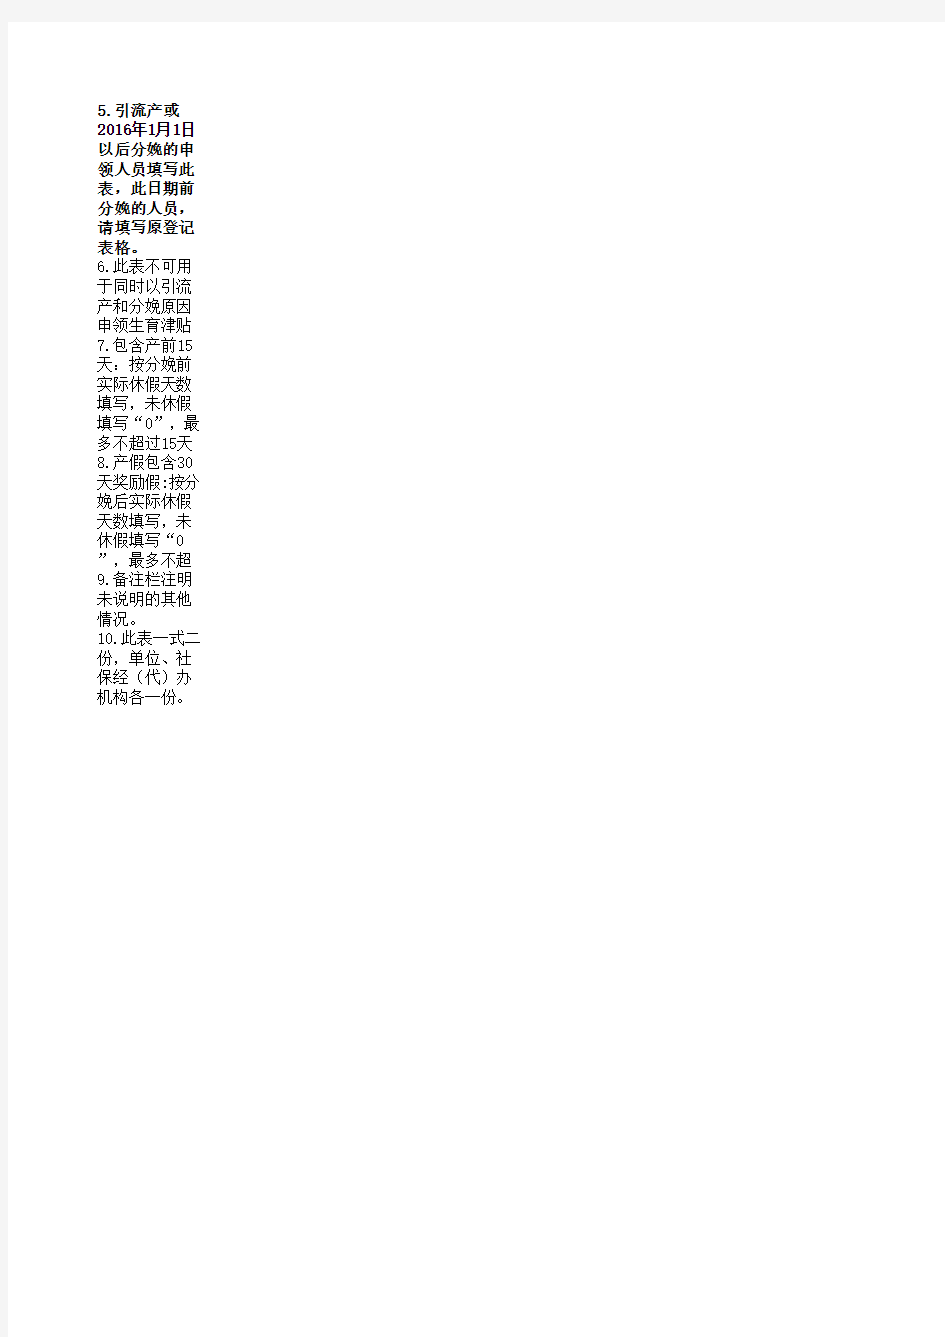 北京市申领生育津贴人员信息登记表